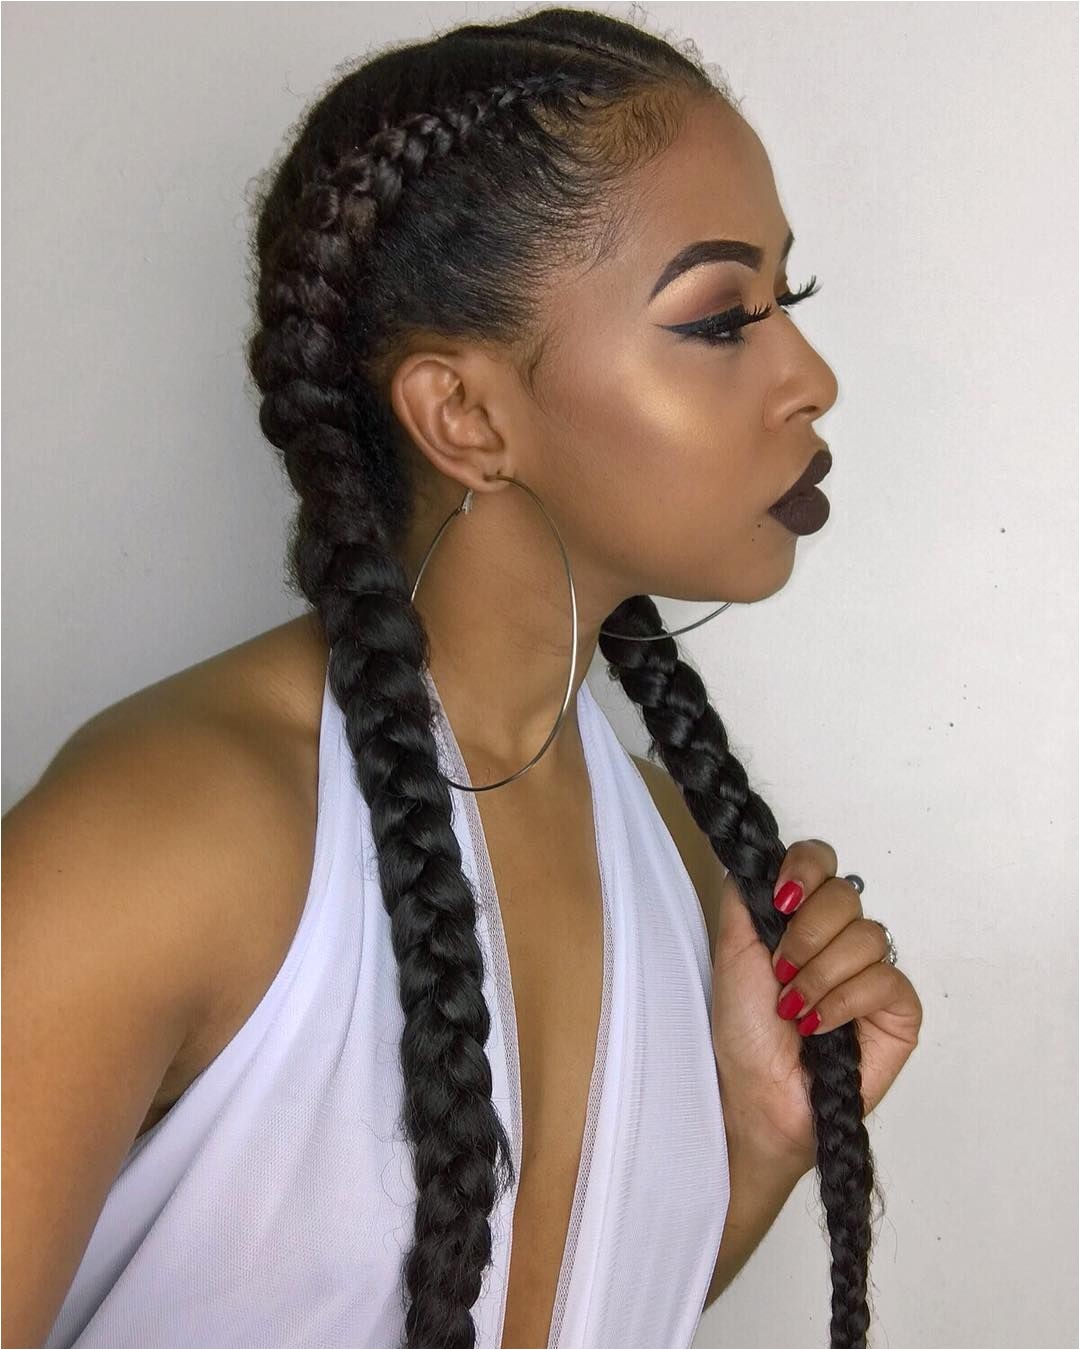 Leh Knee Zah Eh Vee â½ on Instagram “Going to rock this hair for another two days so it can make it a whole week ð¤ I ll be doing a lot of protective